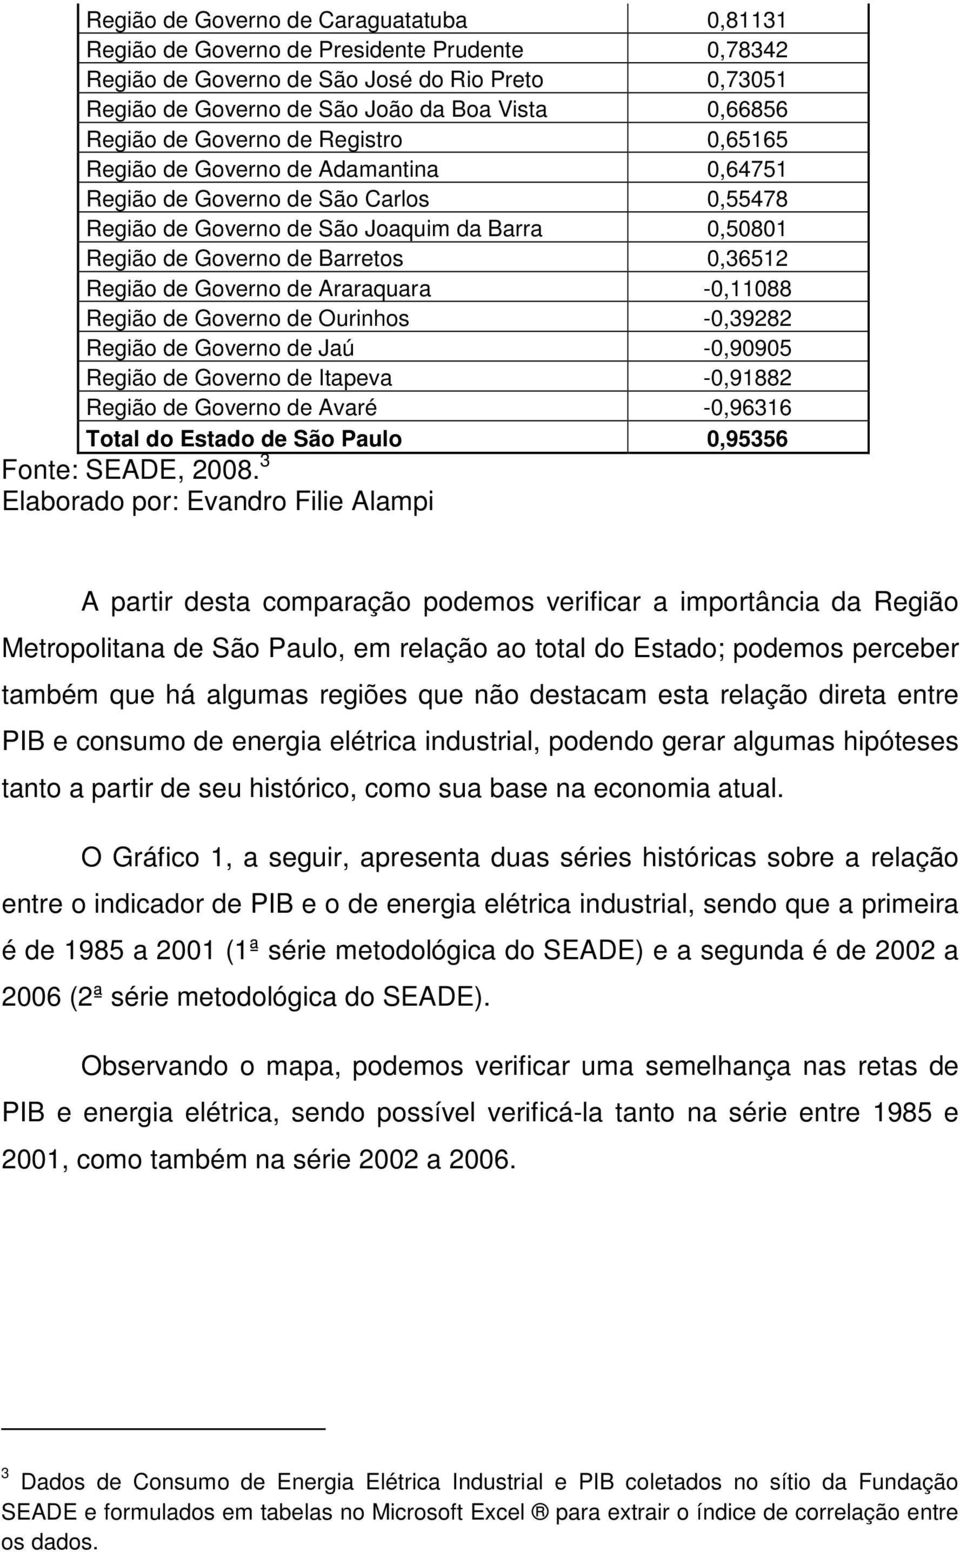 0,36512 Região de Governo de Araraquara -0,11088 Região de Governo de Ourinhos -0,39282 Região de Governo de Jaú -0,90905 Região de Governo de Itapeva -0,91882 Região de Governo de Avaré -0,96316